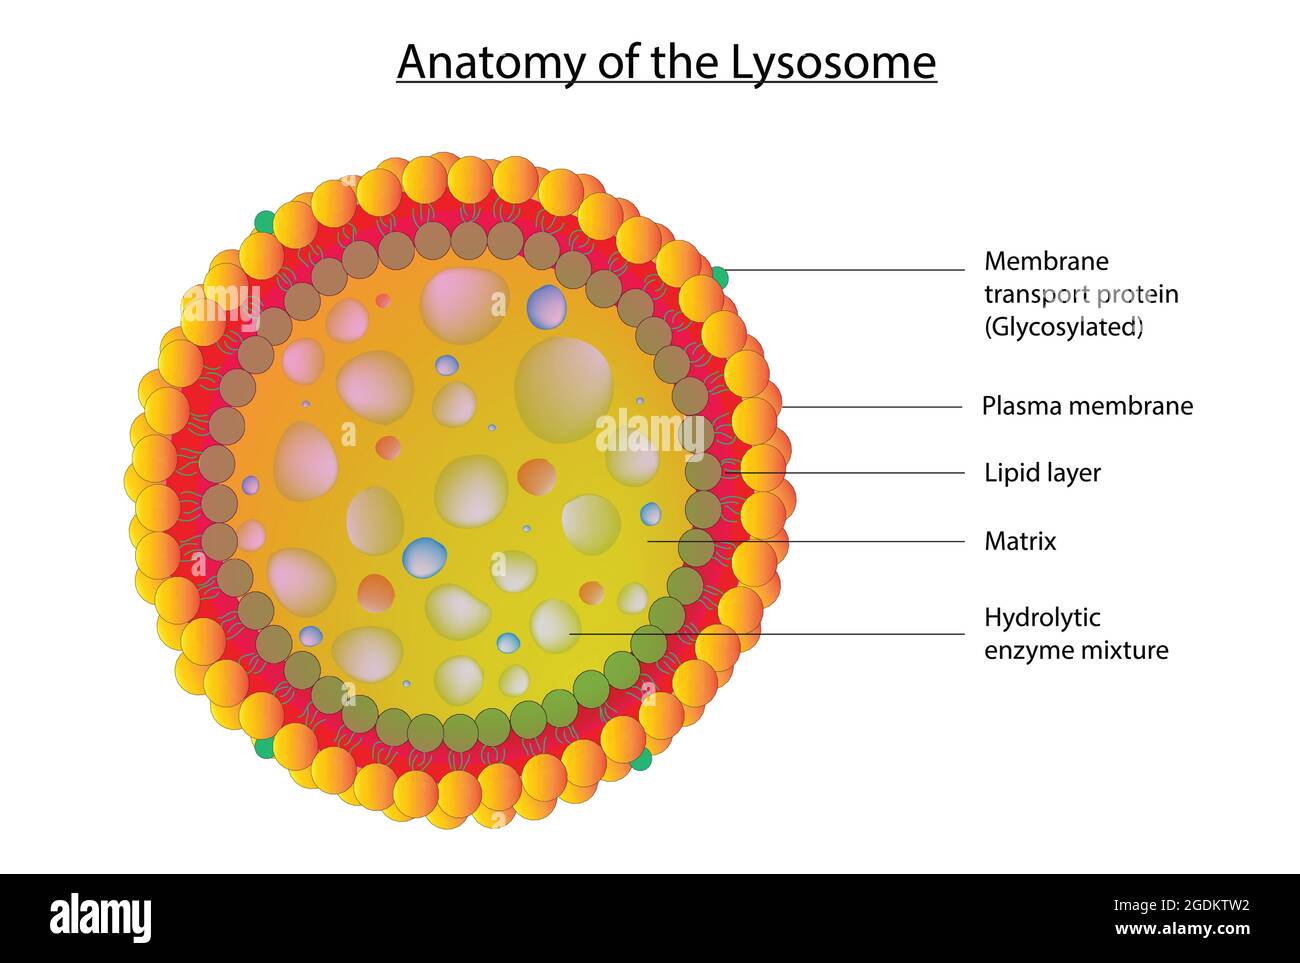 Biologische Anatomie des Lysosomen, detaillierte Anatomie des Lysosomen, lysosomale Struktur, Selbstmordbeutel der Zelle, Selbstmordbeutel einer tierischen Zellanatomie Stock Vektor